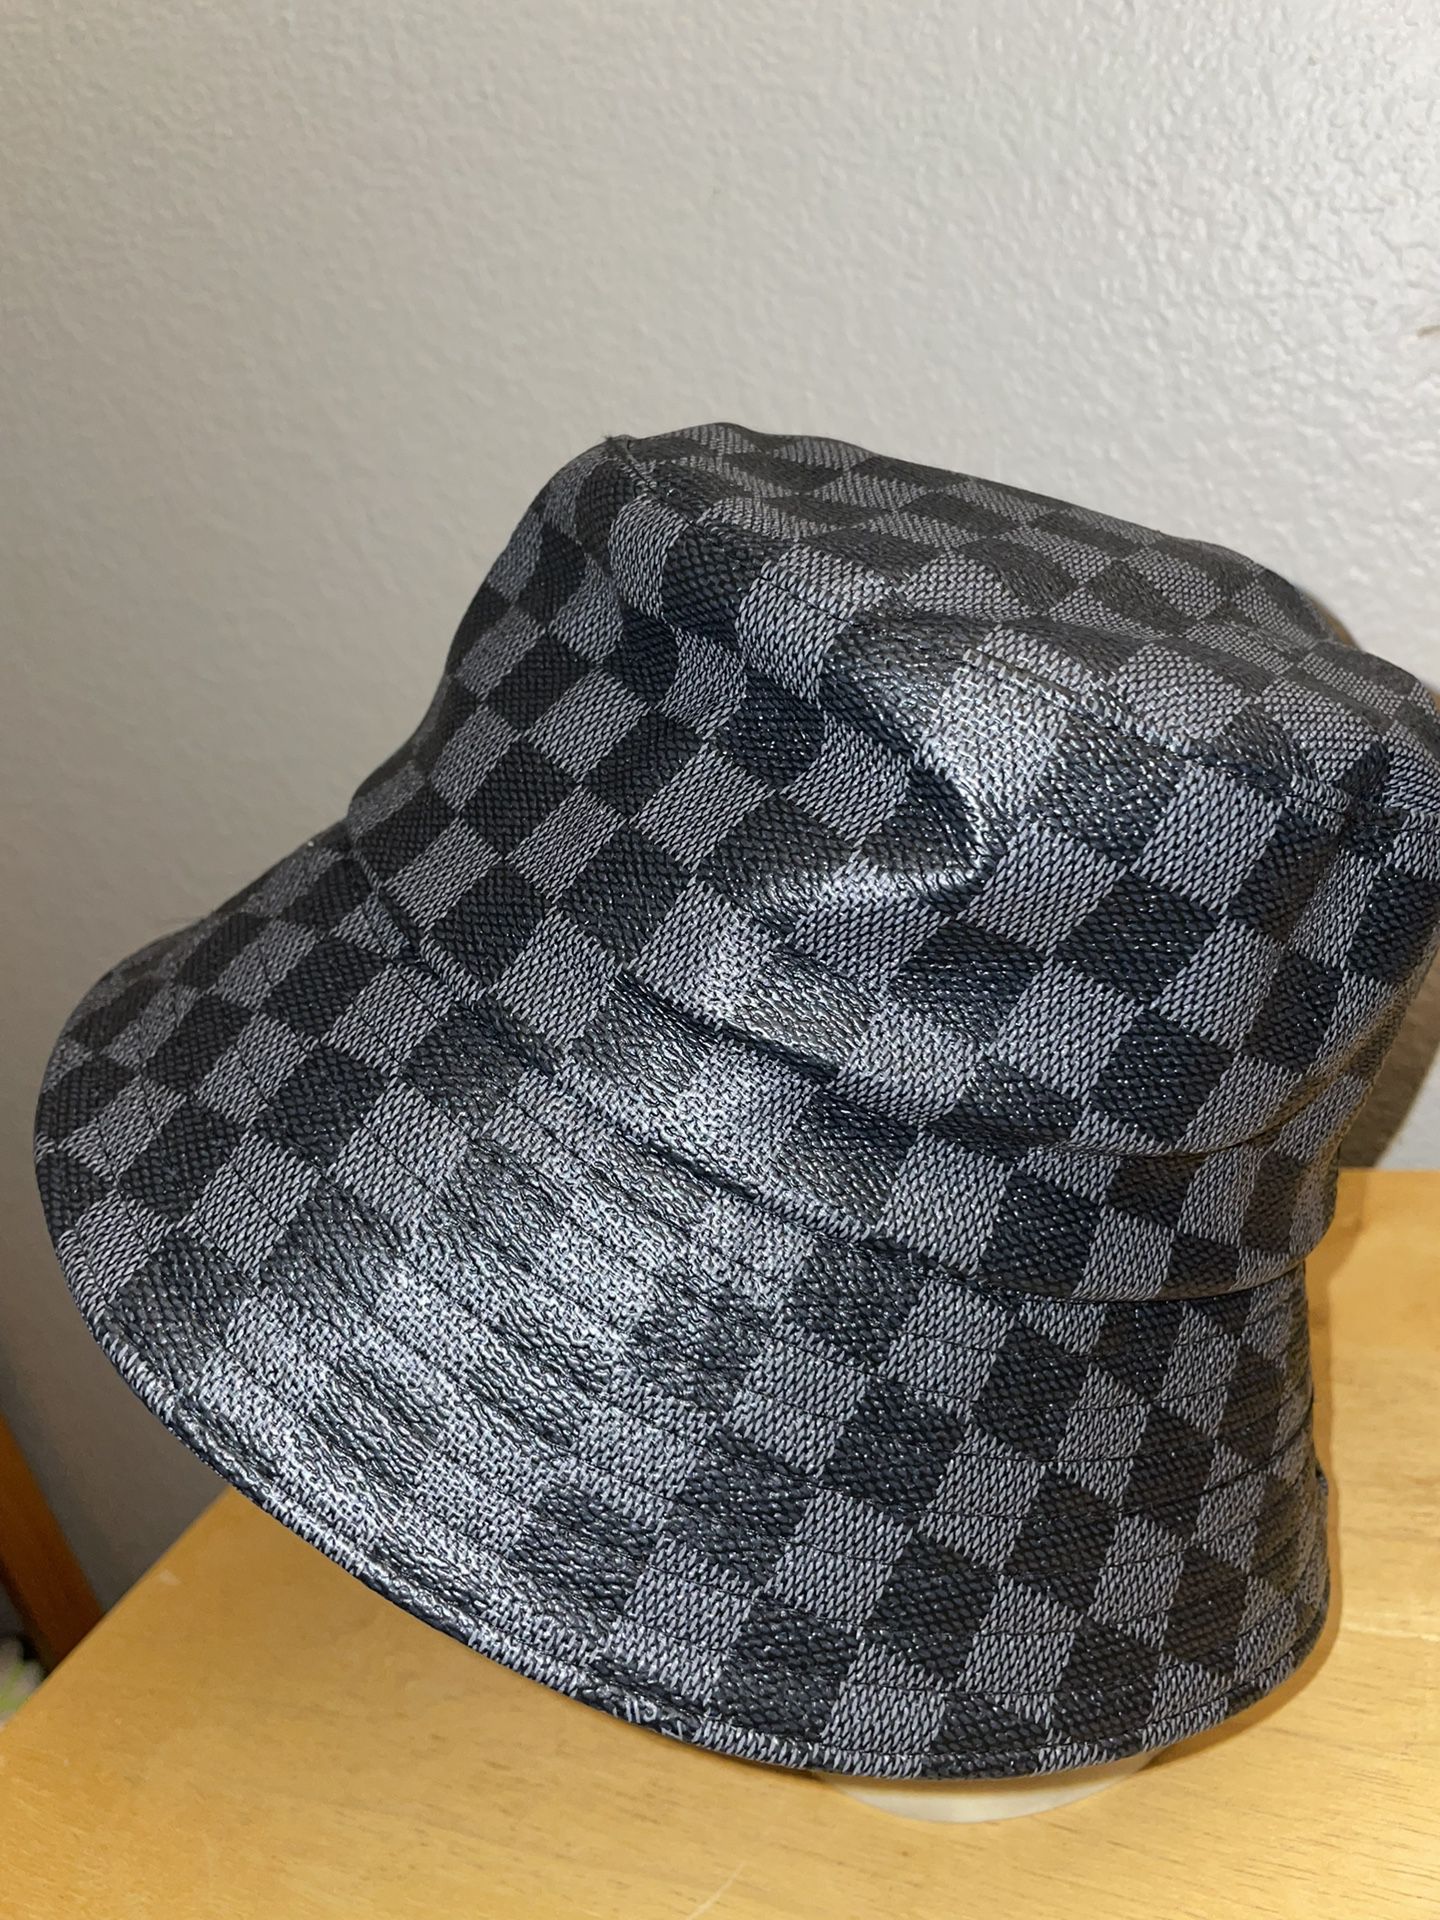 LV Bucket Hat for Sale in Las Vegas, NV - OfferUp